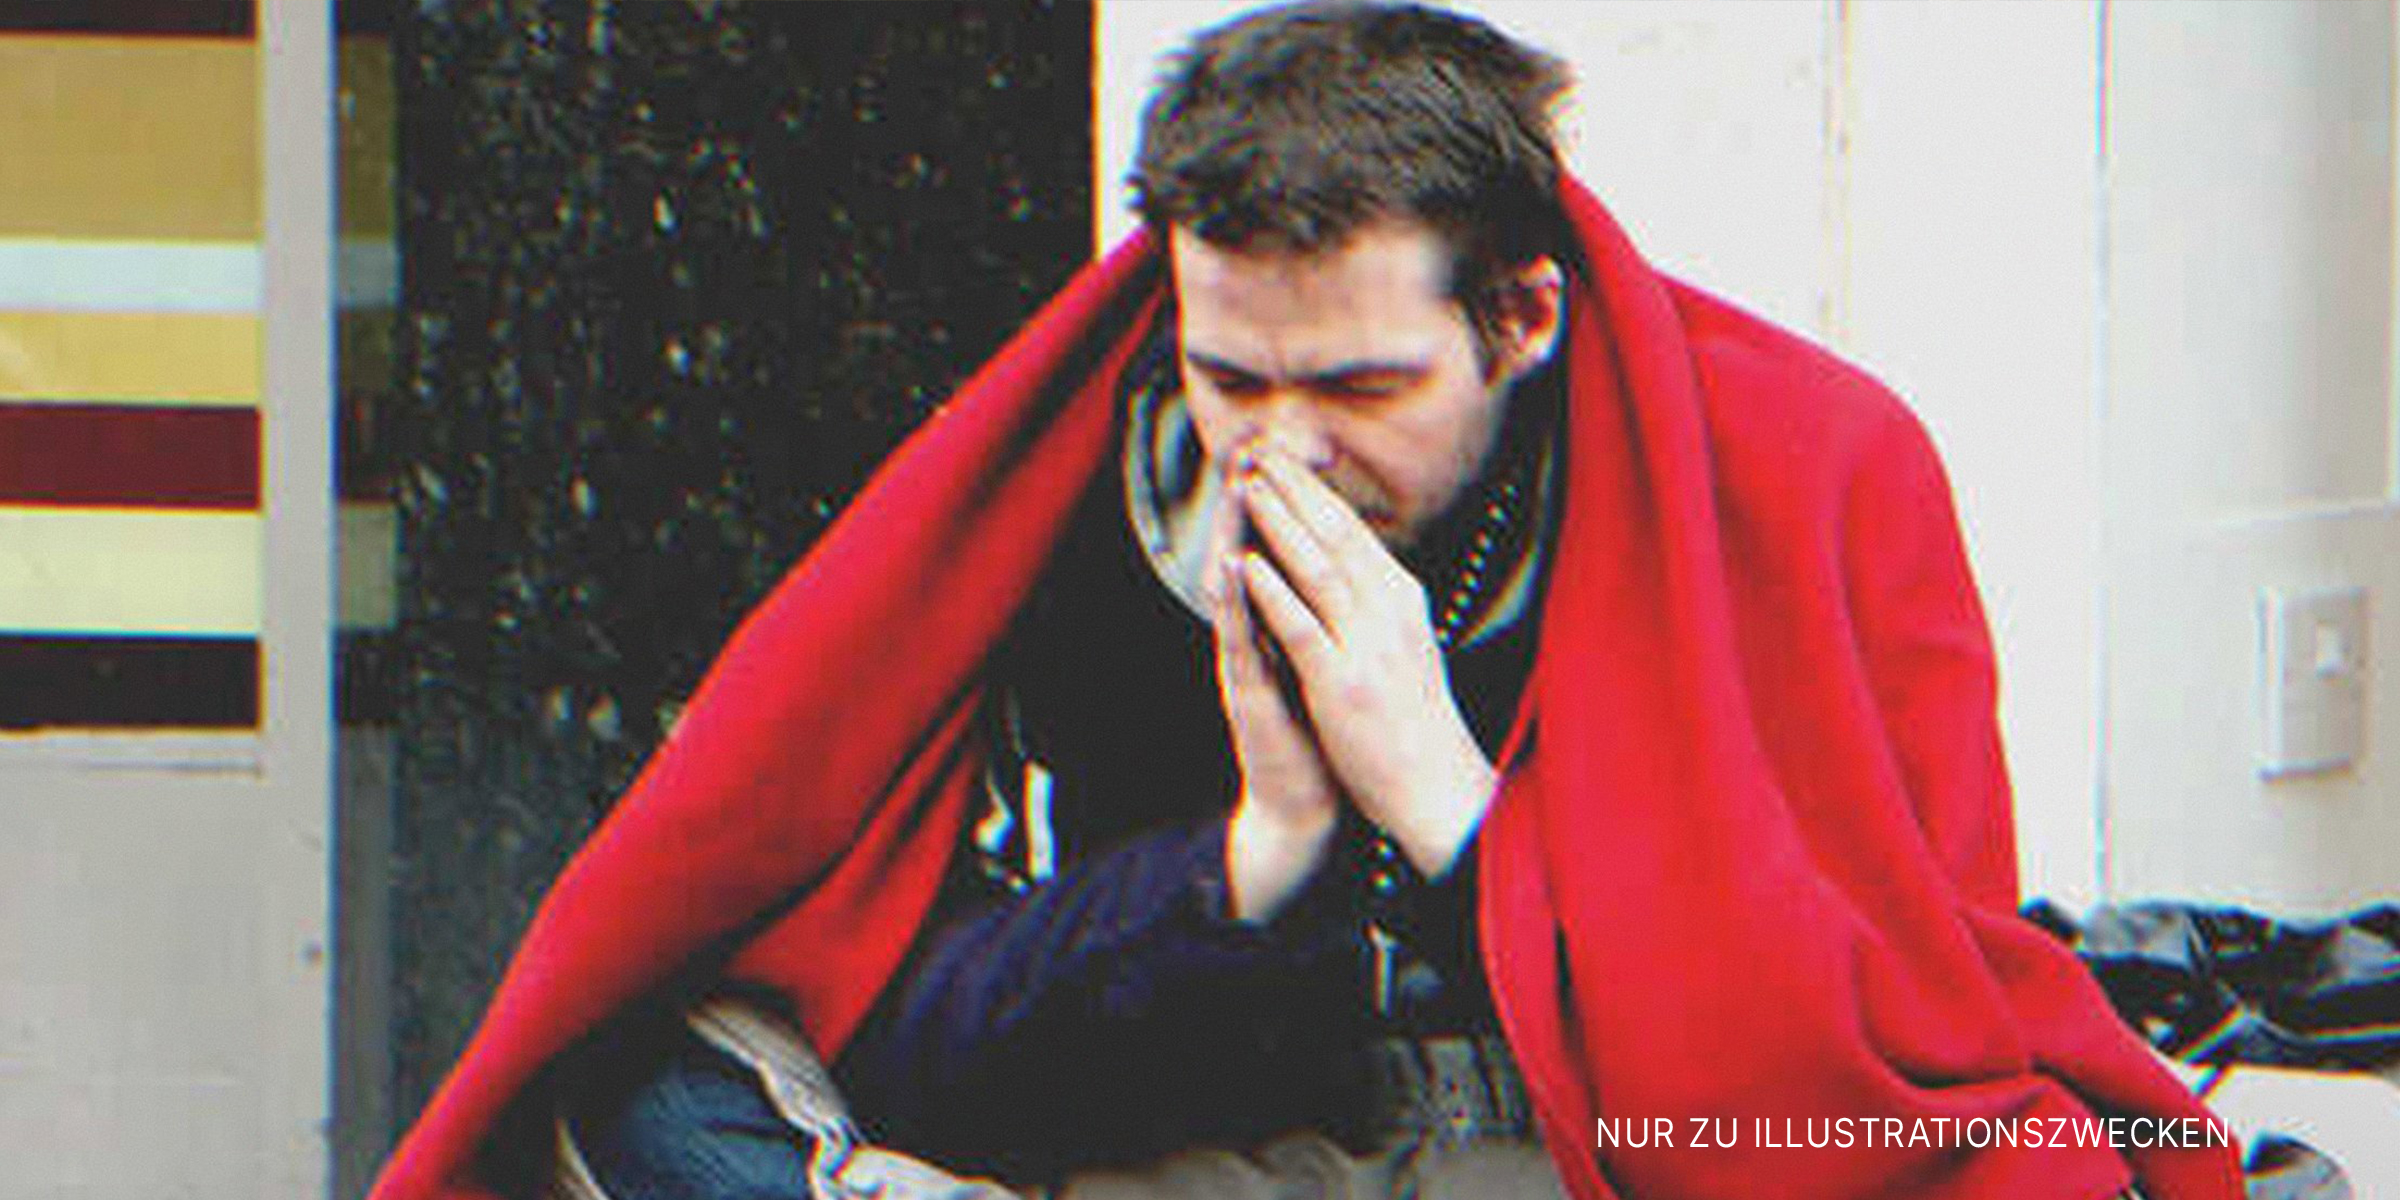 Trauriger Mann auf der Straße | Quelle: Flickr/garryknight (CC BY 2.0)